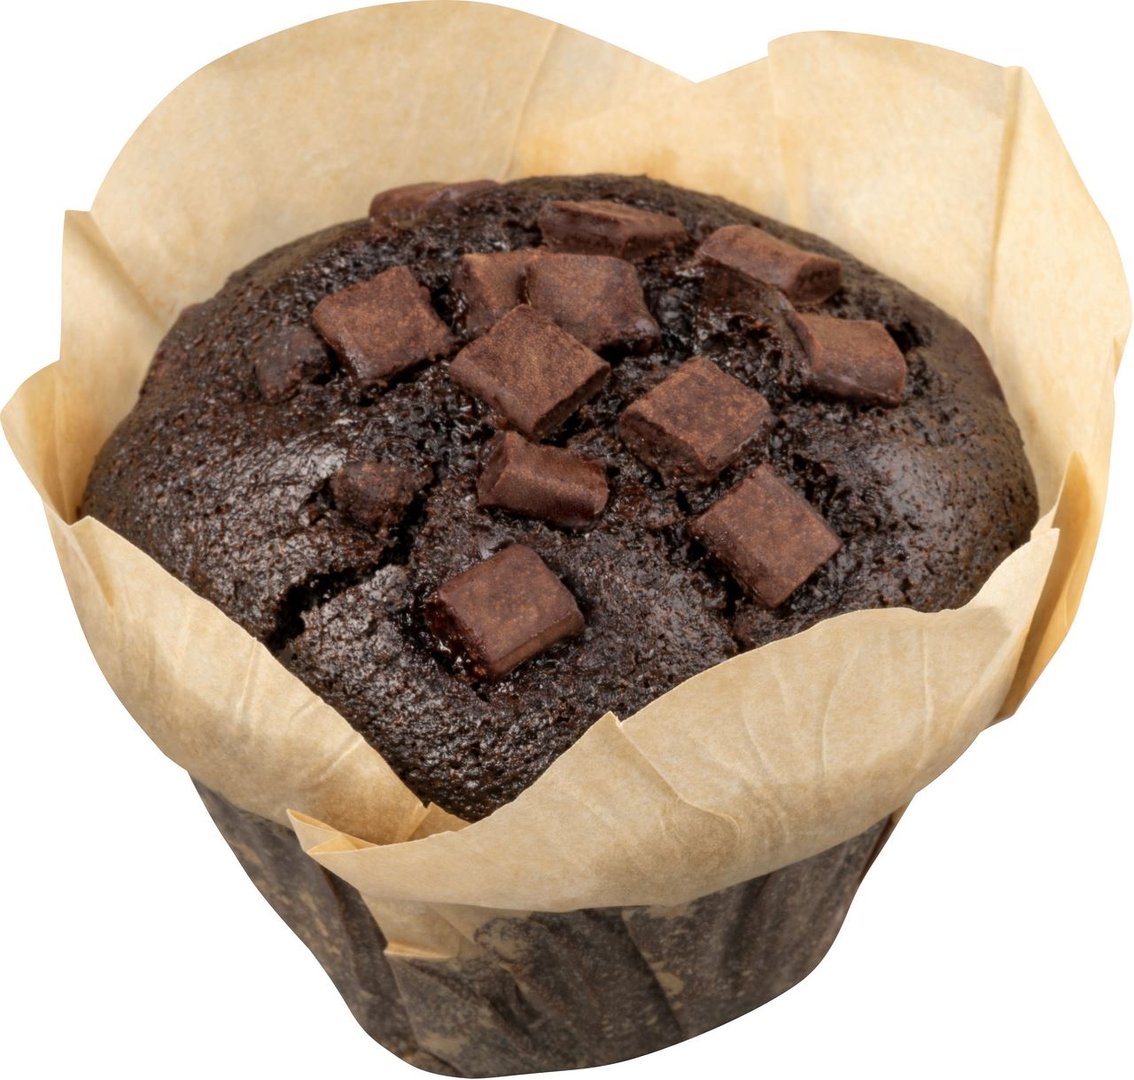 Baker & Baker - Dark Chocolate Muffin vegan, 12 Stück à ca. 110 g, tiefgefroren - 1 kg Tray